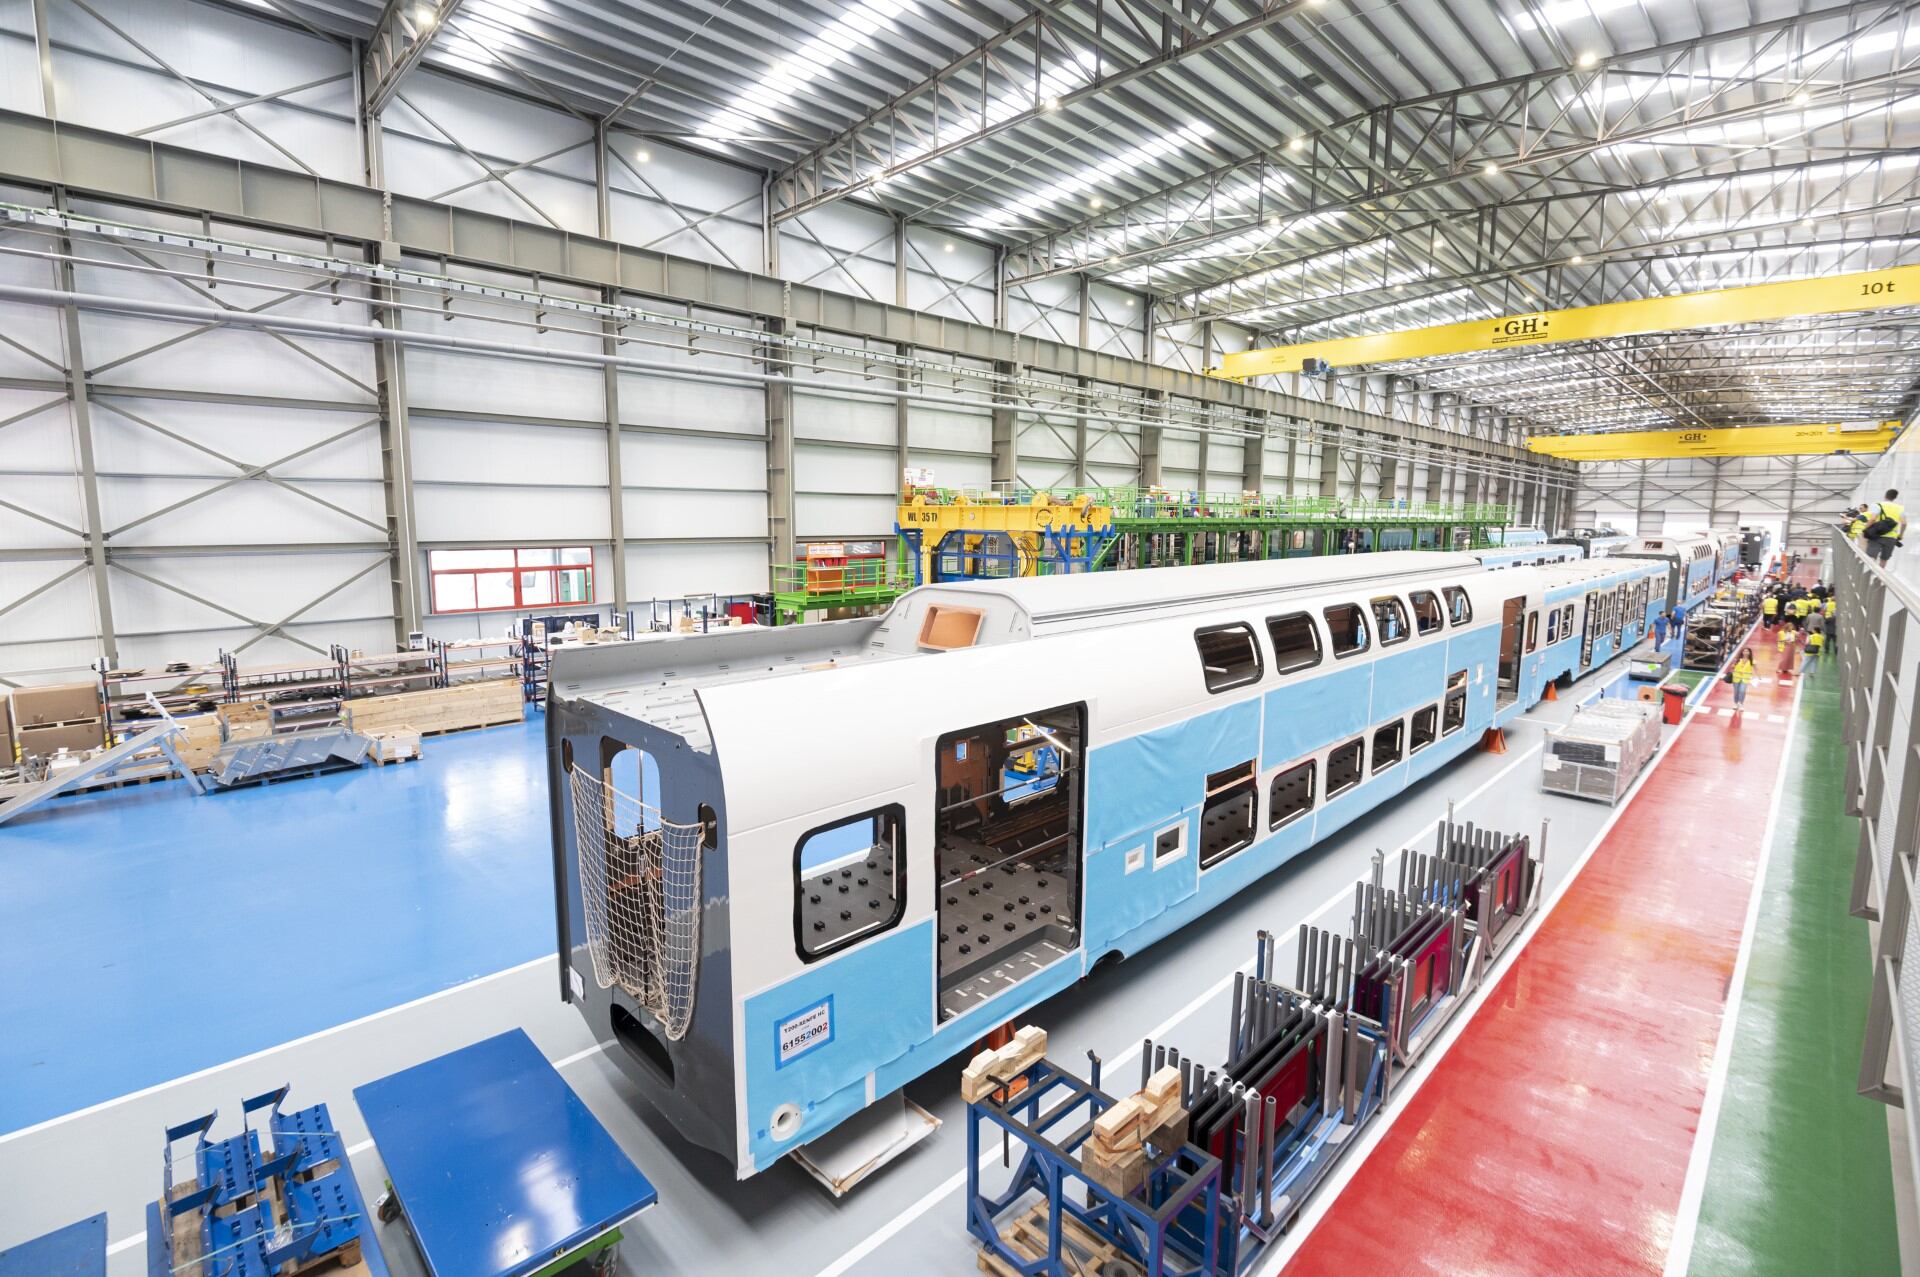 Tren de Cercanías de doble piso, en proceso de fabricación en la planta de Stadler, en Albuixech (Valencia).